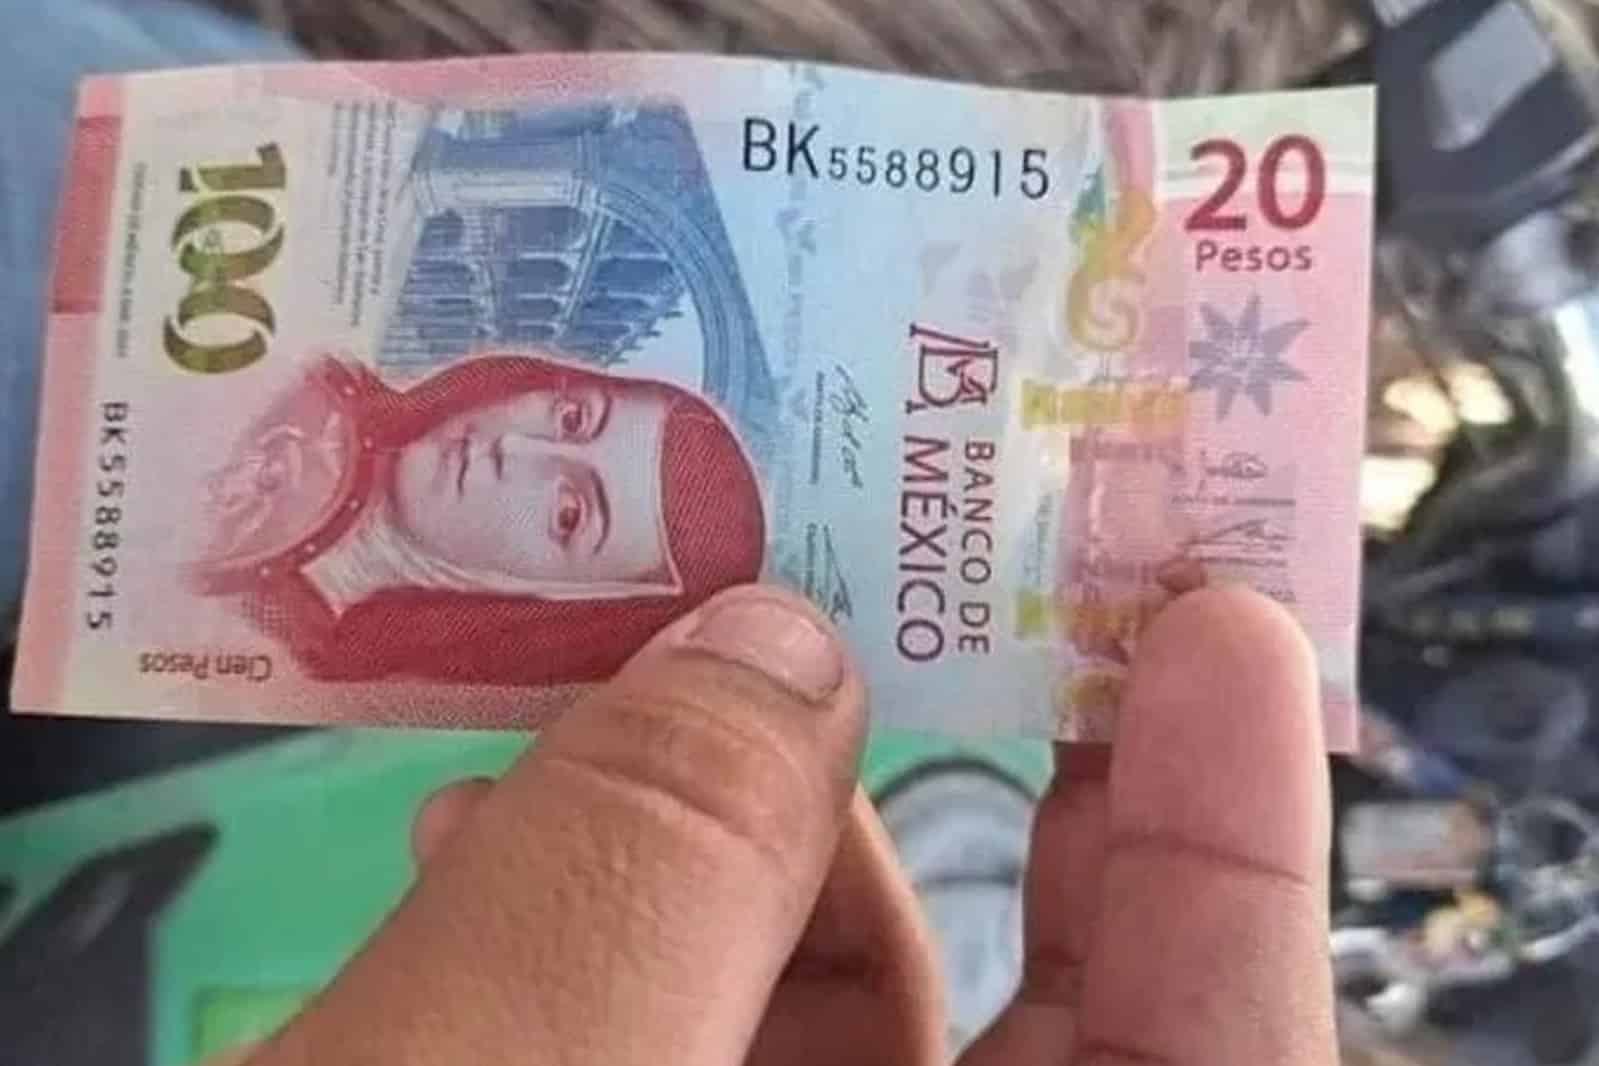 Ya llegó a ti un billete de 120 pesos; joven dice que cajero le dio uno y se hace viral